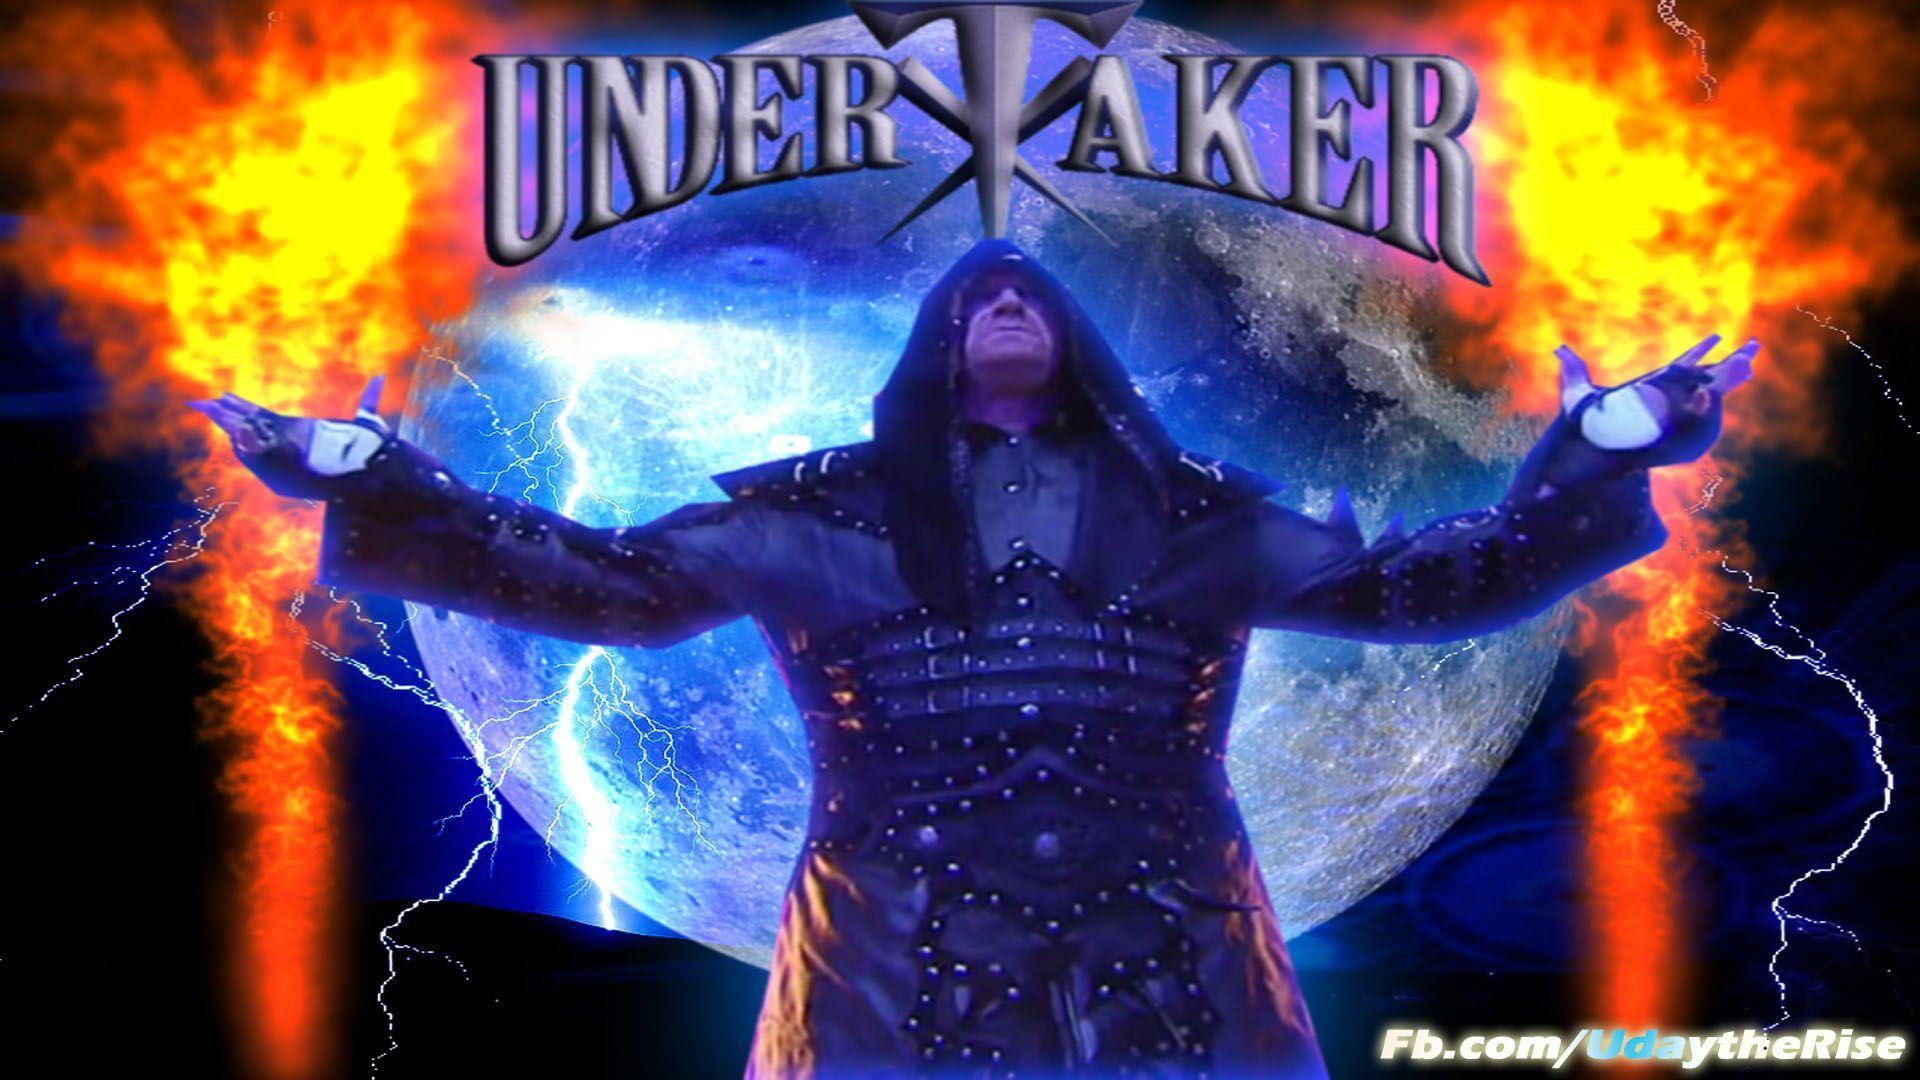 Wwe undertaker wallpaper 2013 (6)